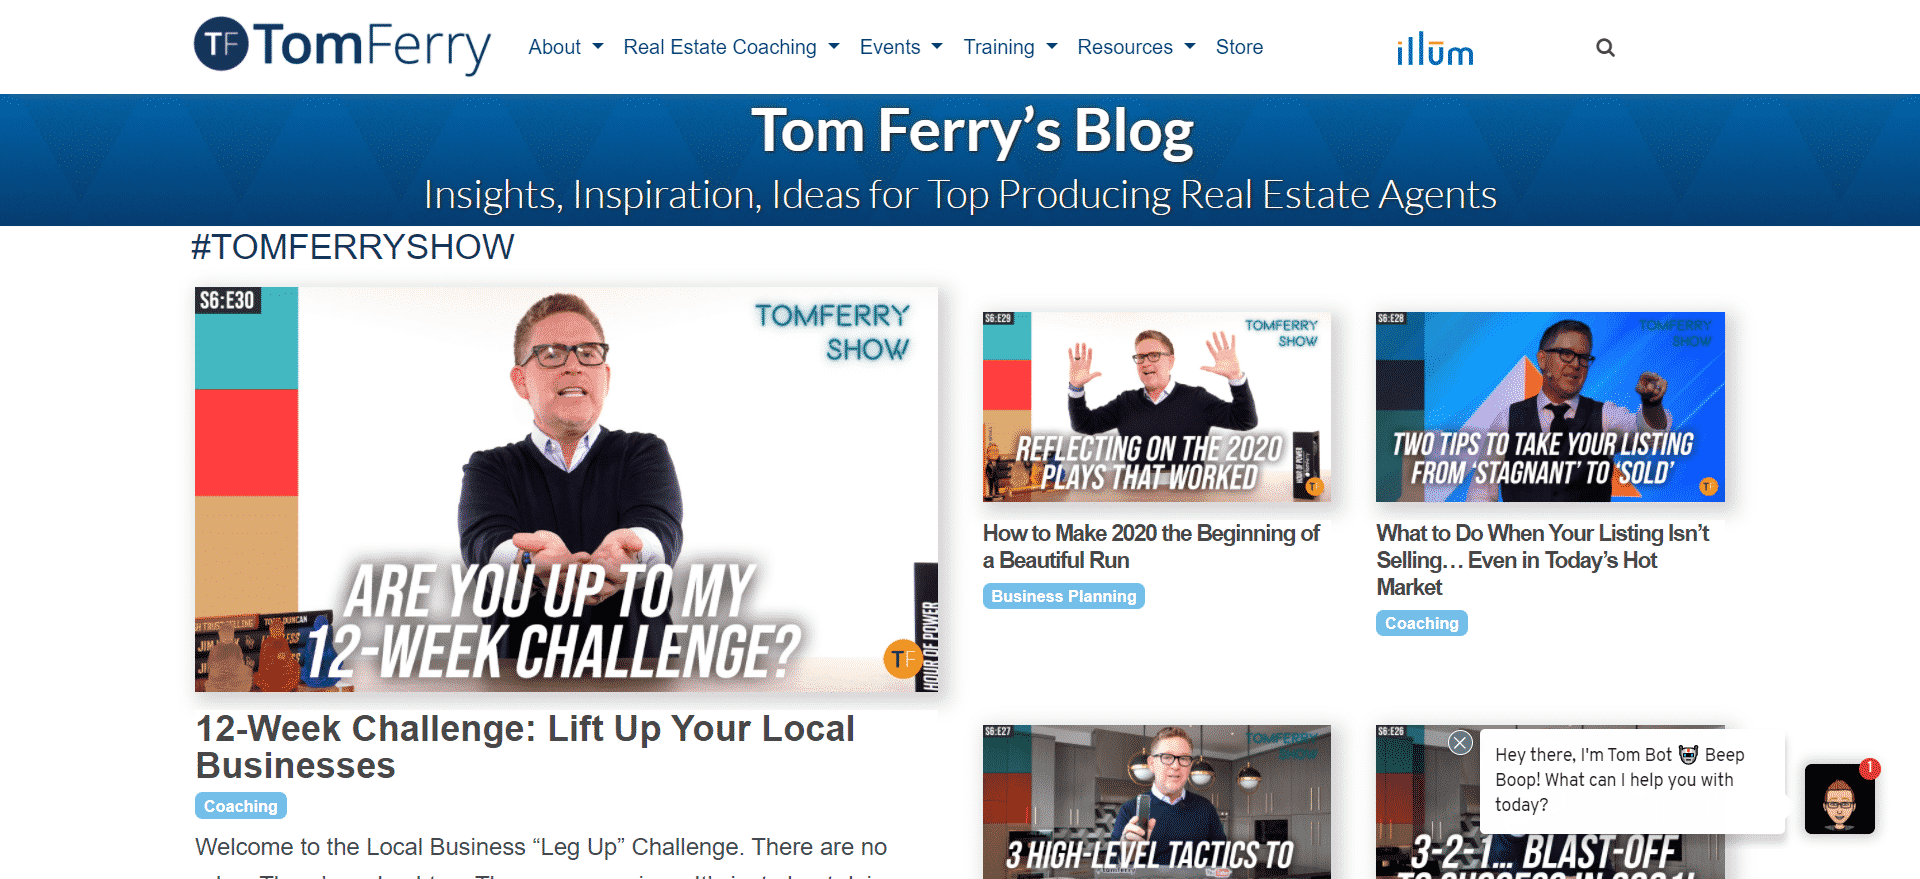 Tom Ferry’s Blog